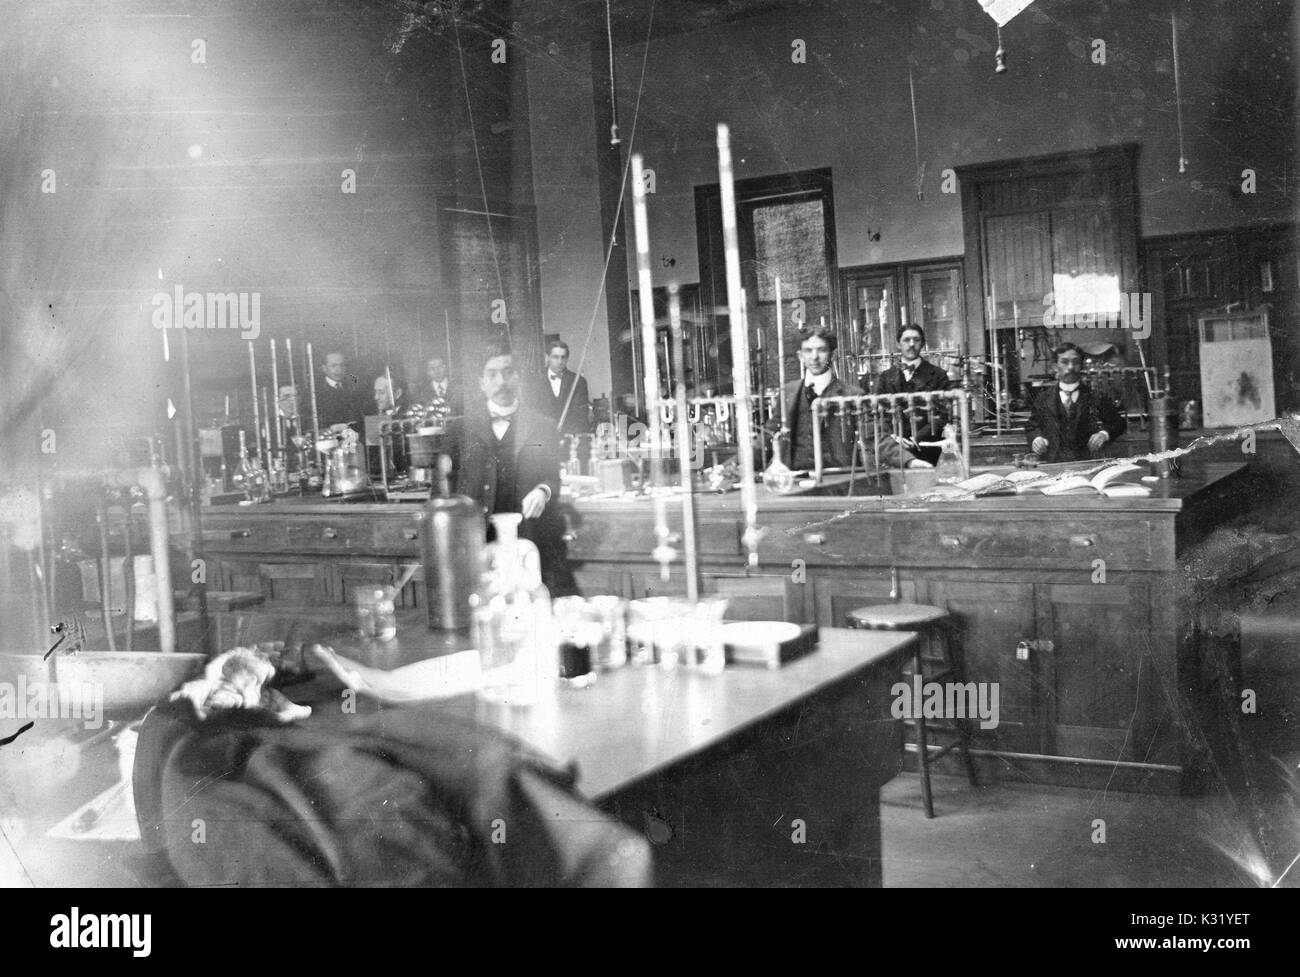 Seppia fotografia di interno del laboratorio di chimica B, sotto la direzione di Herman Morse, al vecchio Campus della Johns Hopkins University, con studenti e professori in posa dietro le tabelle di laboratorio con la vetreria e altre apparecchiature, Baltimore, Maryland, 1902. Foto Stock